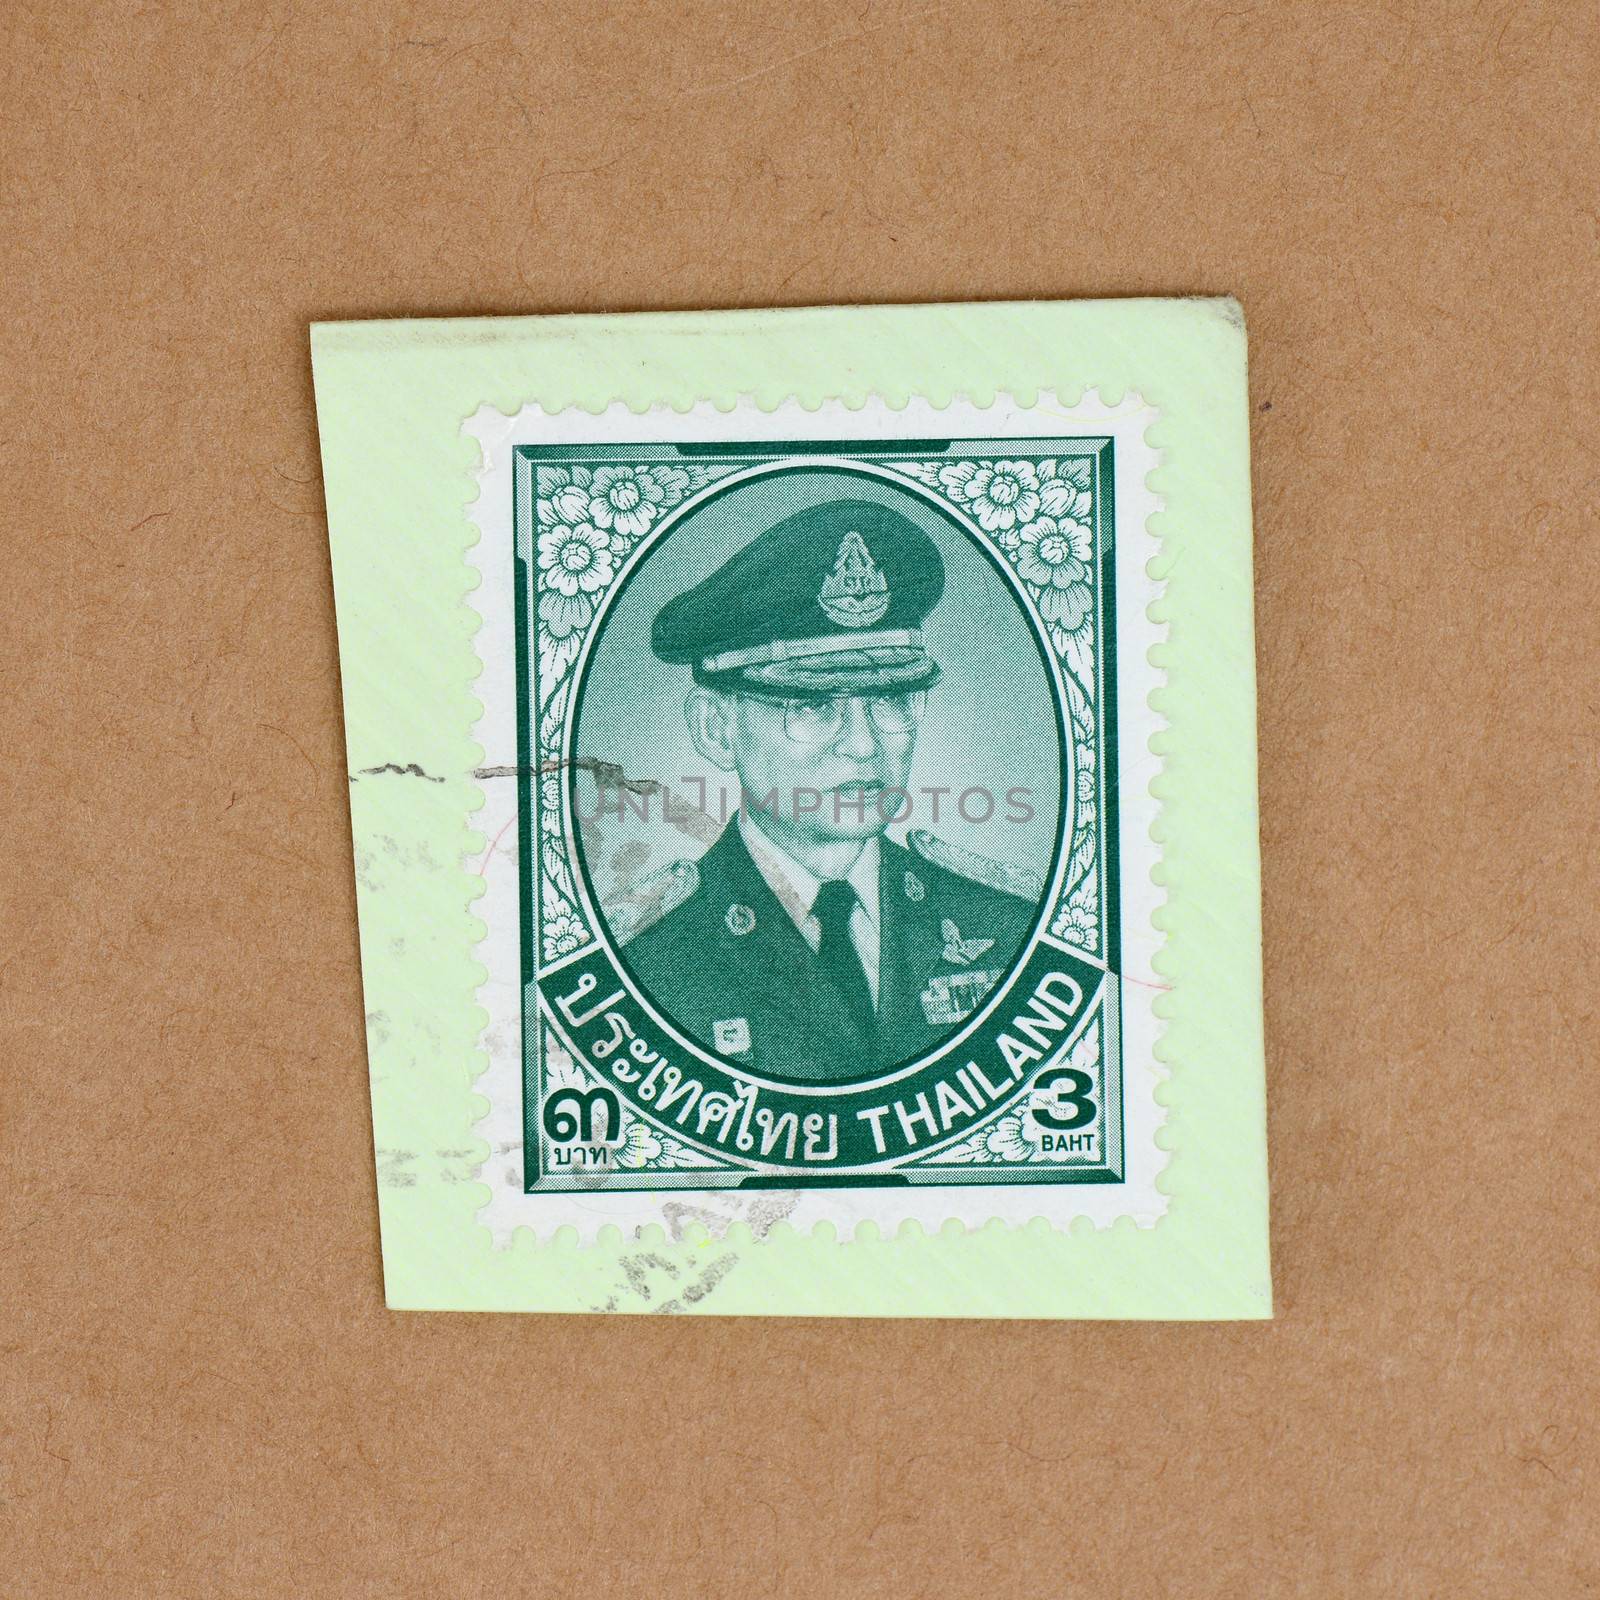 Postage Stamp by antpkr